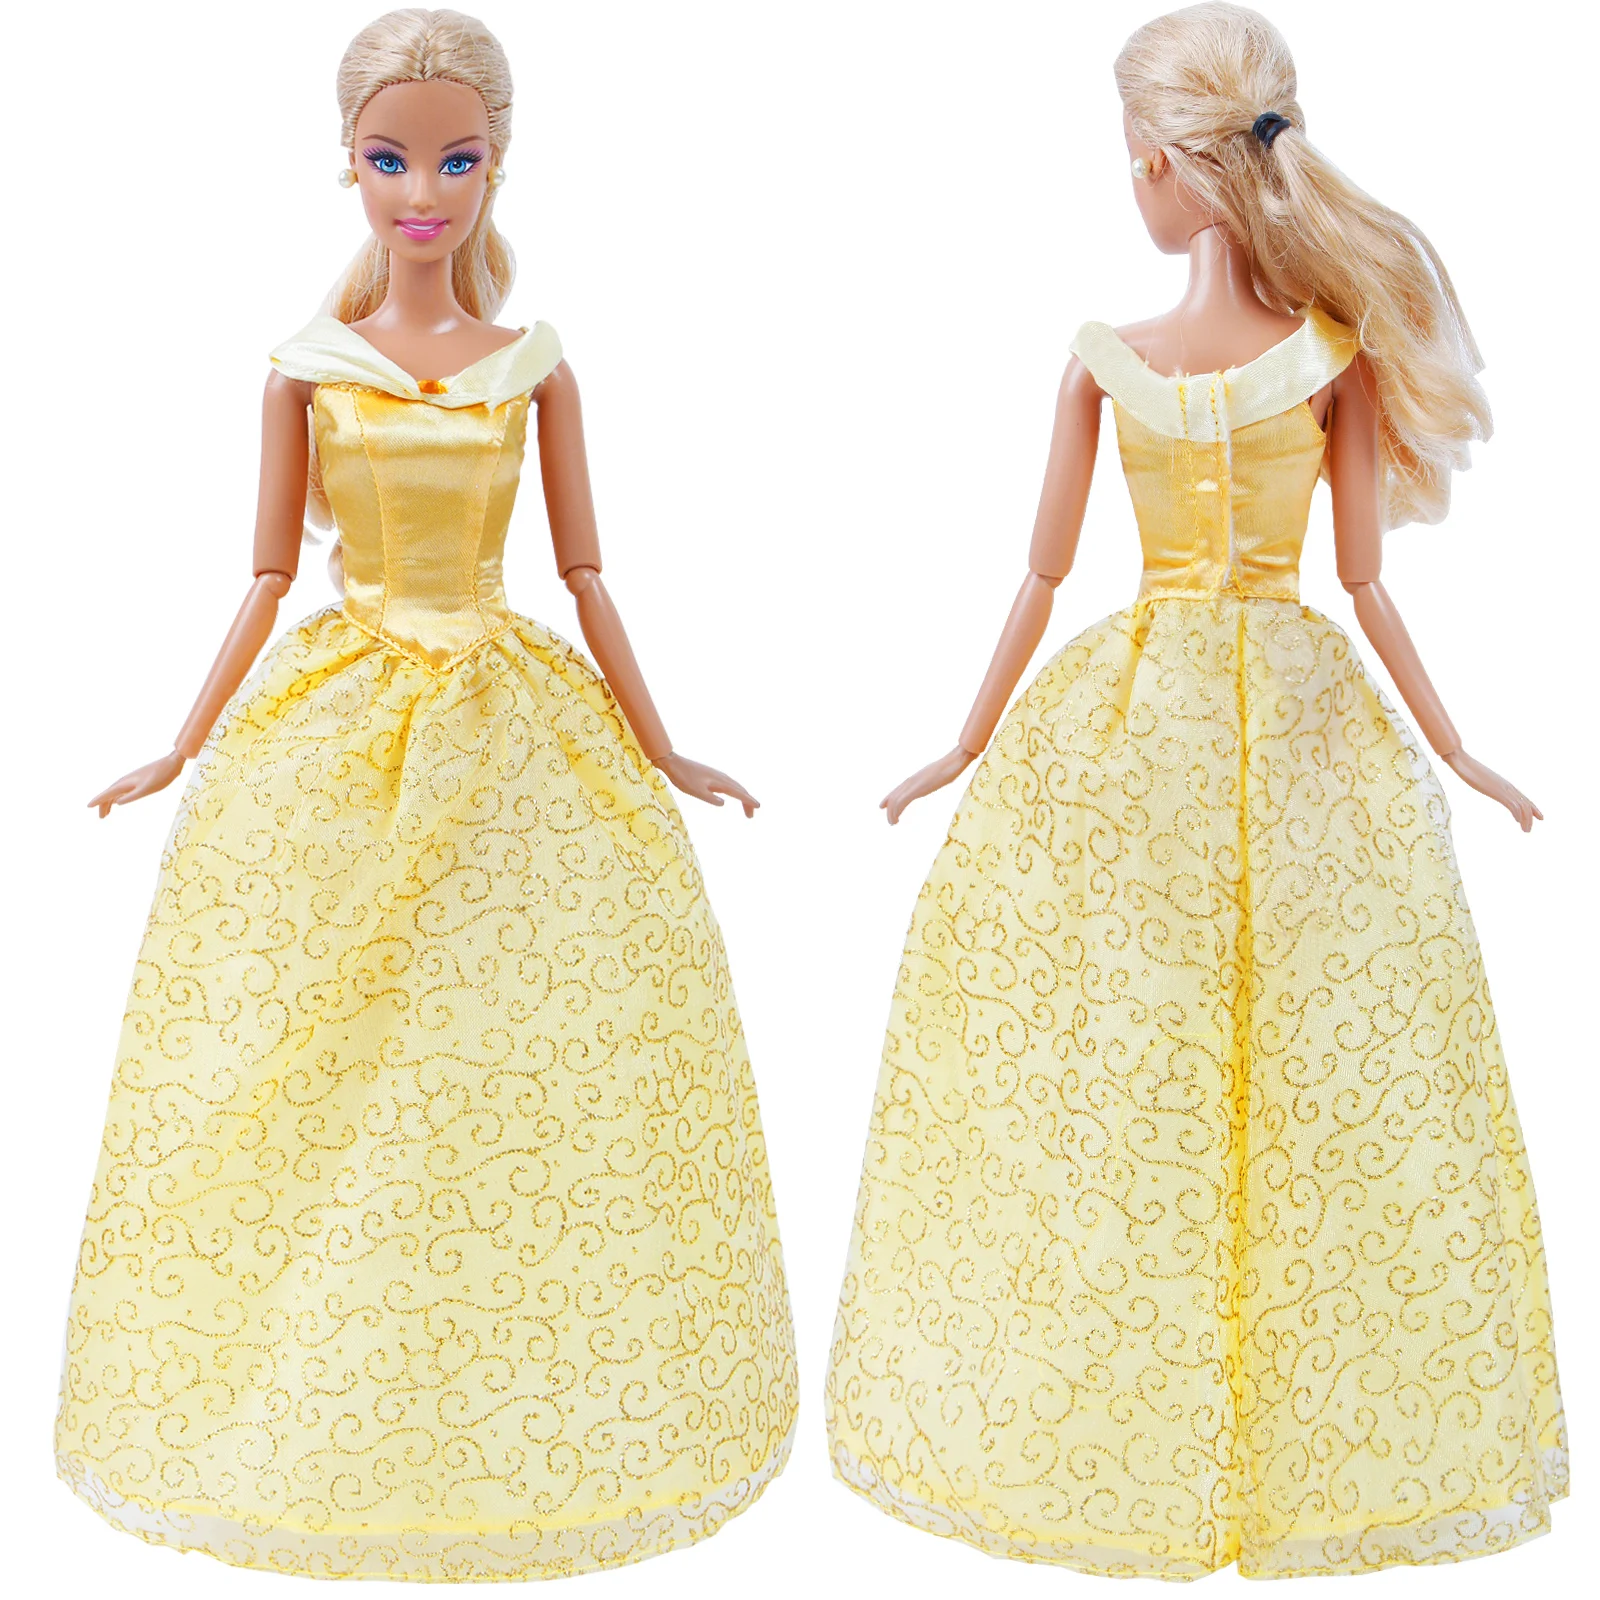 Высокое качество ручной работы сказка платье копия Bella принцесса желтый свадебное платье праздничная одежда юбка для Барби аксессуары для